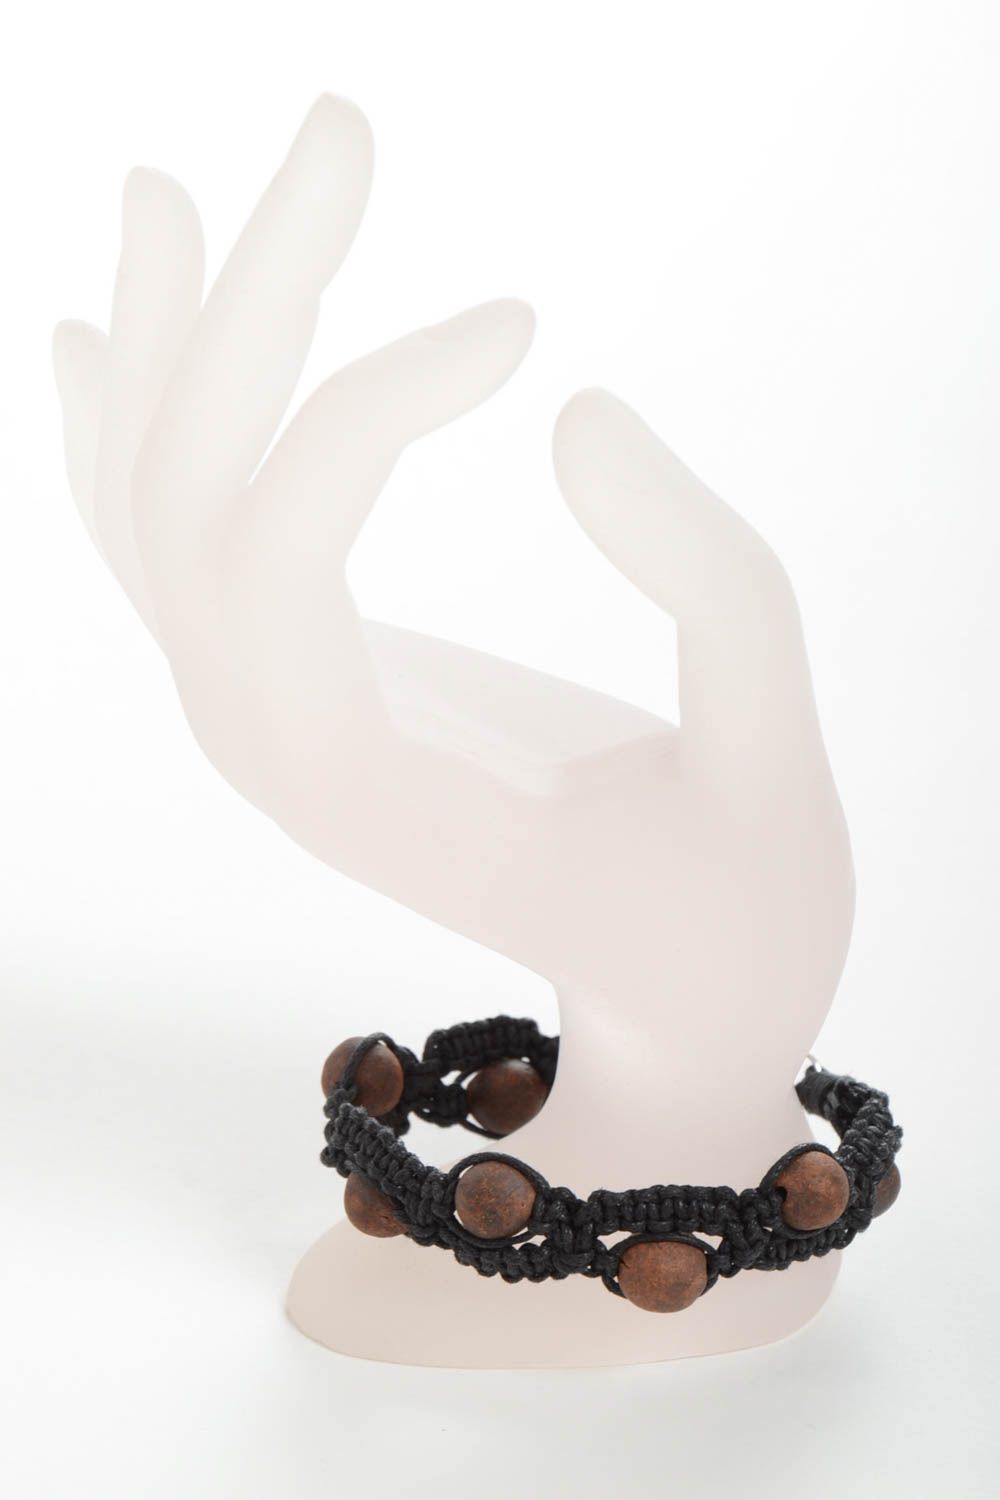 Плетеный браслет из вощеного шнура ручной работы авторский с глиняными бусинами фото 3